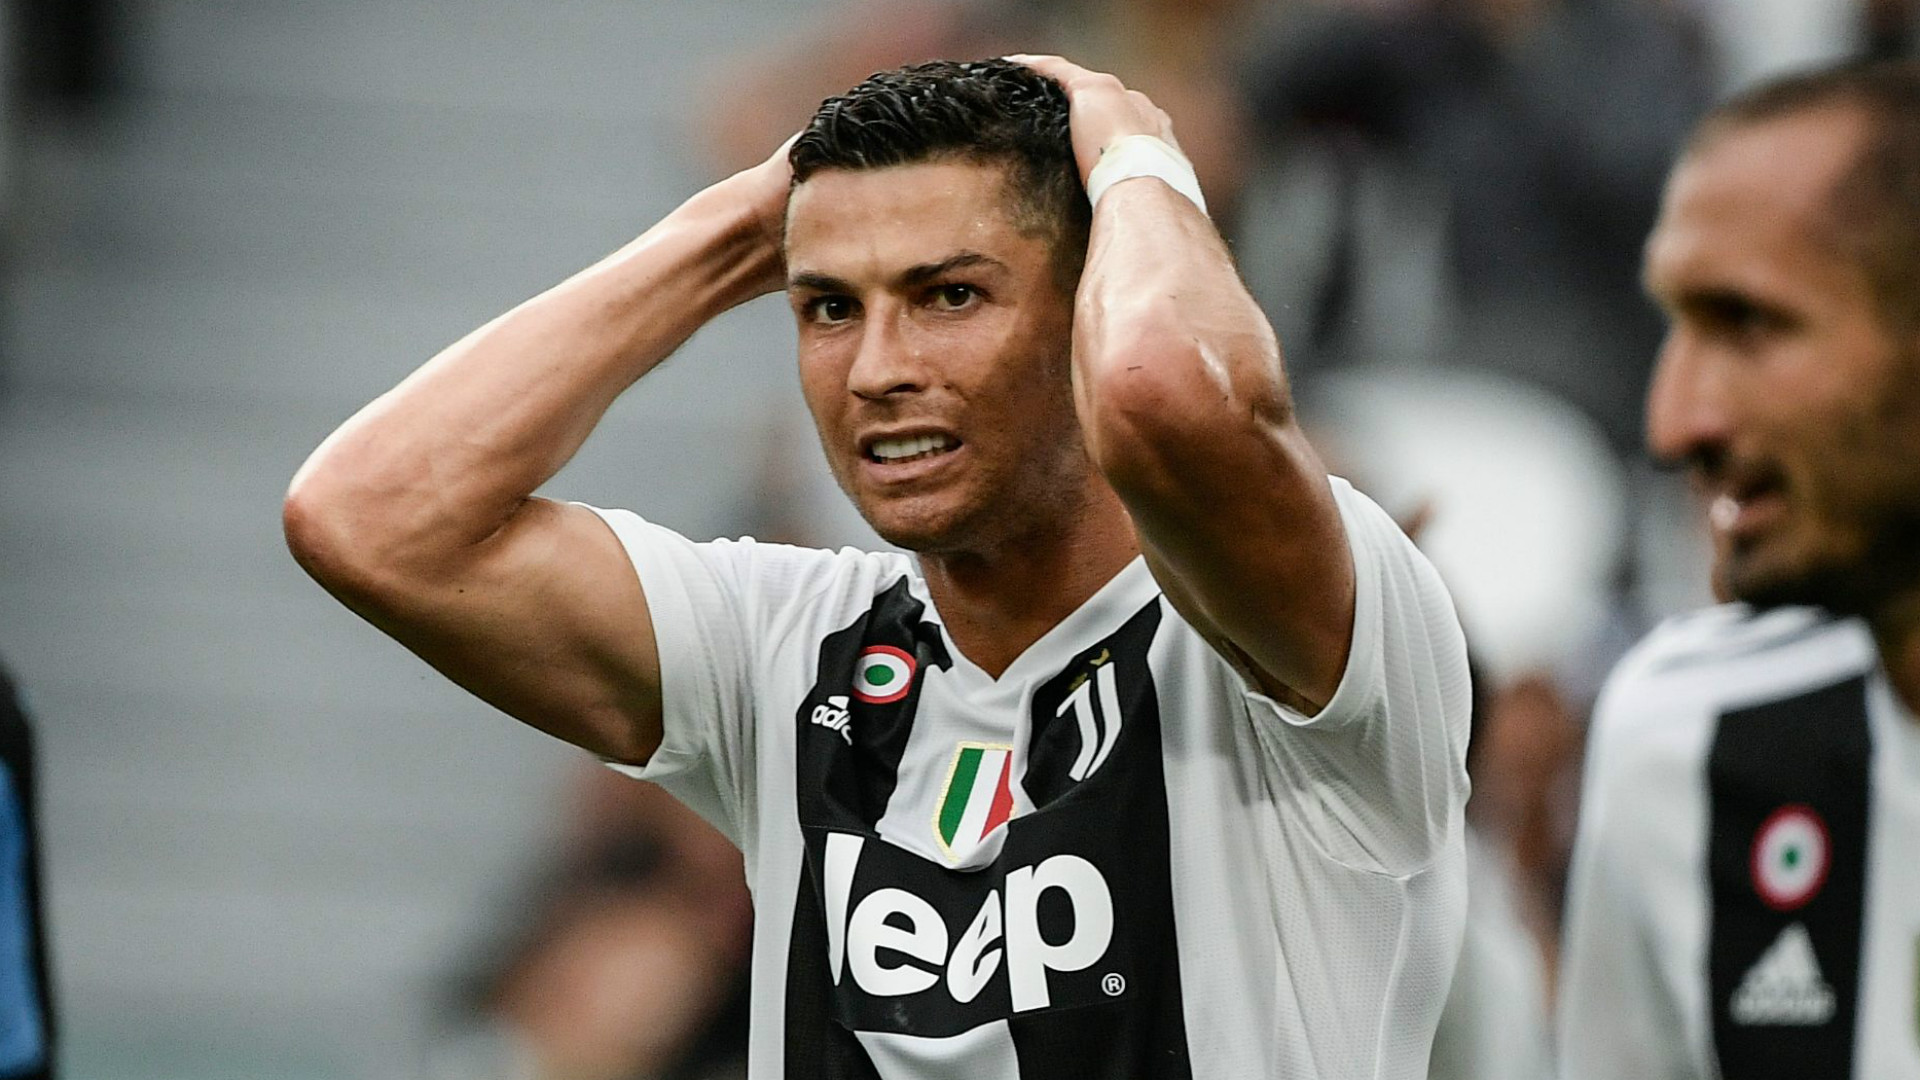 Juventus star, Cristiano Ronaldo